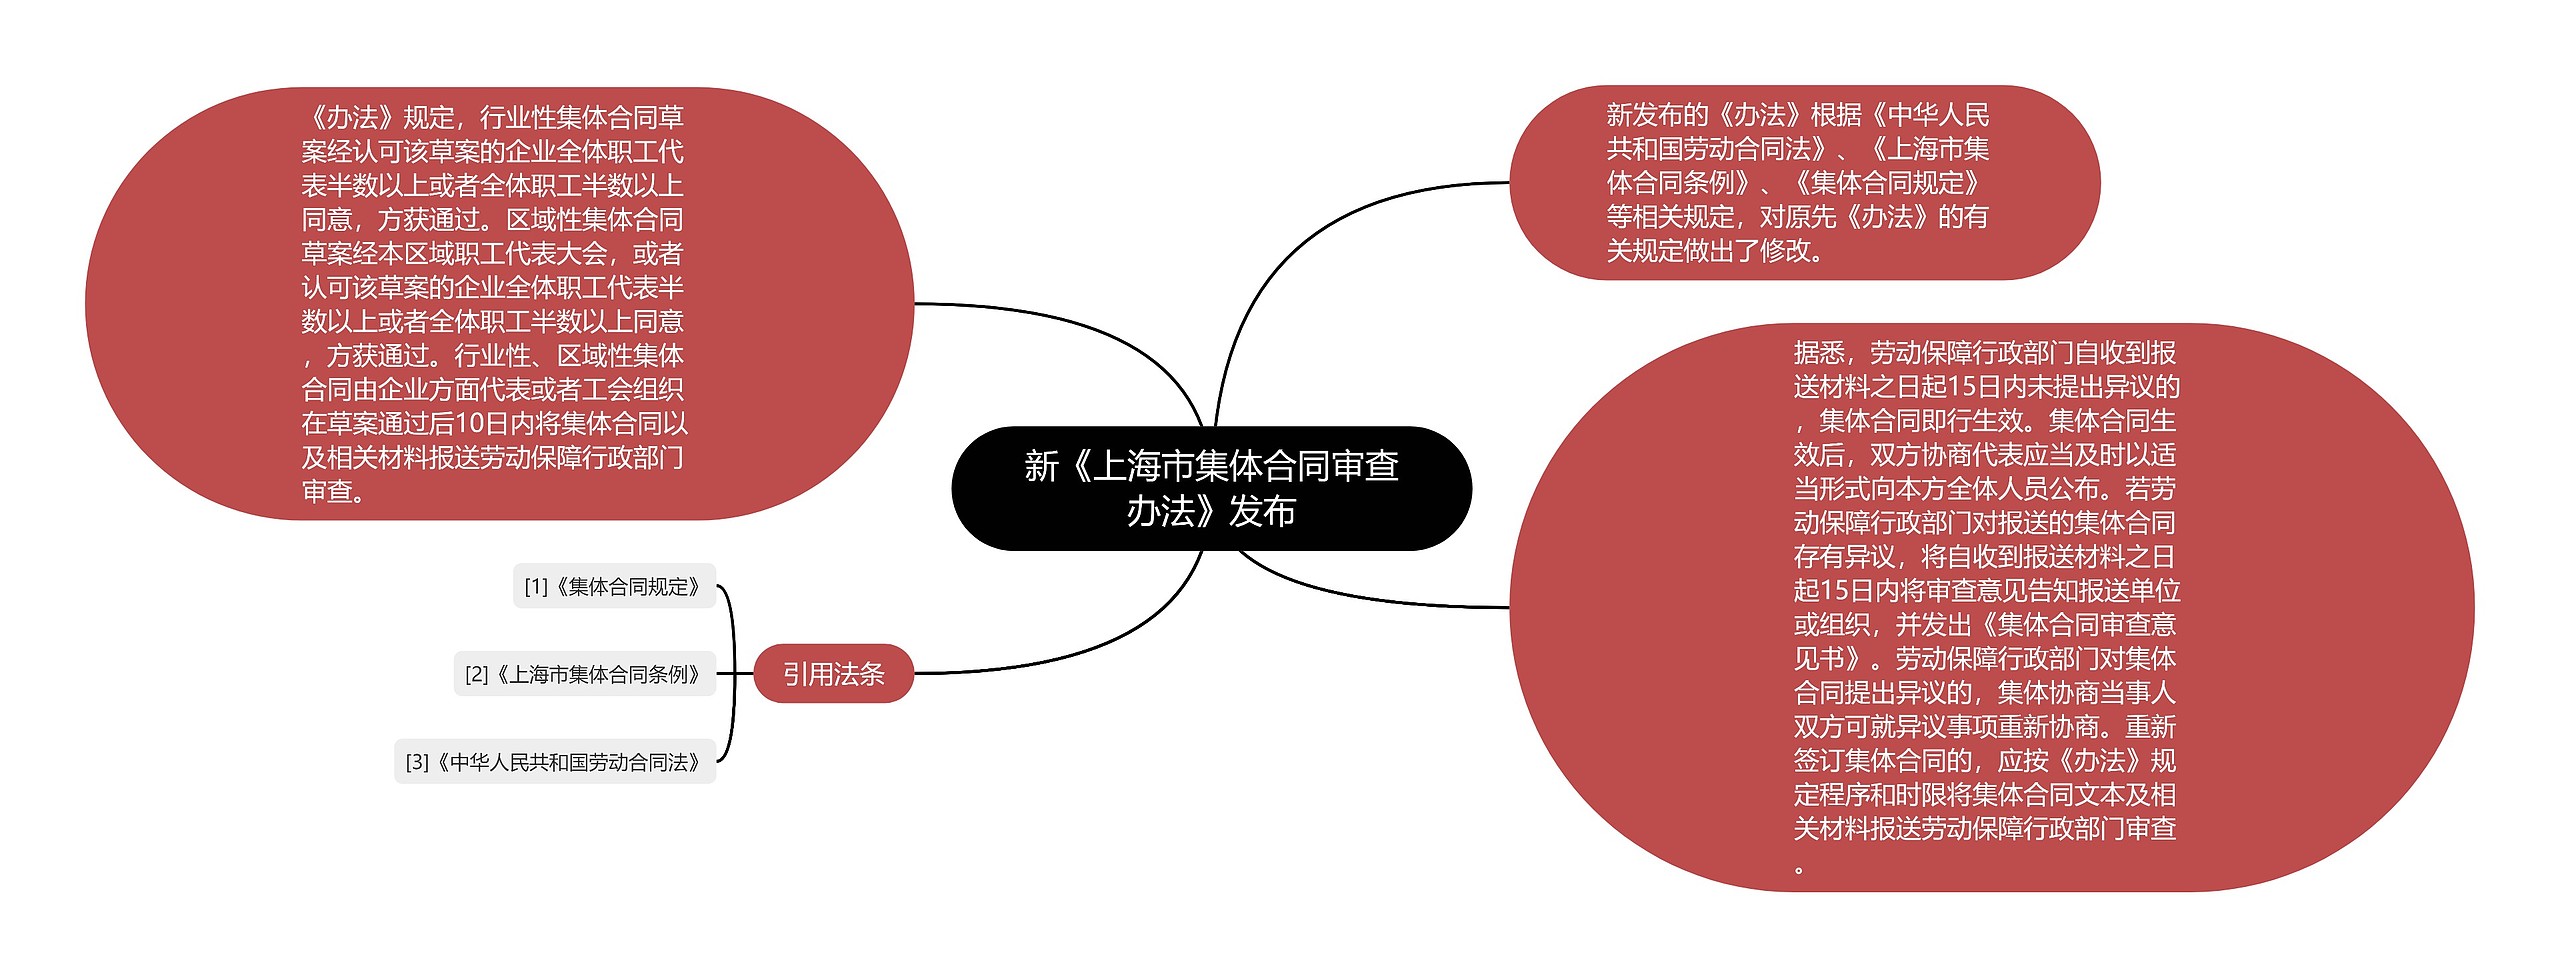 新《上海市集体合同审查办法》发布思维导图